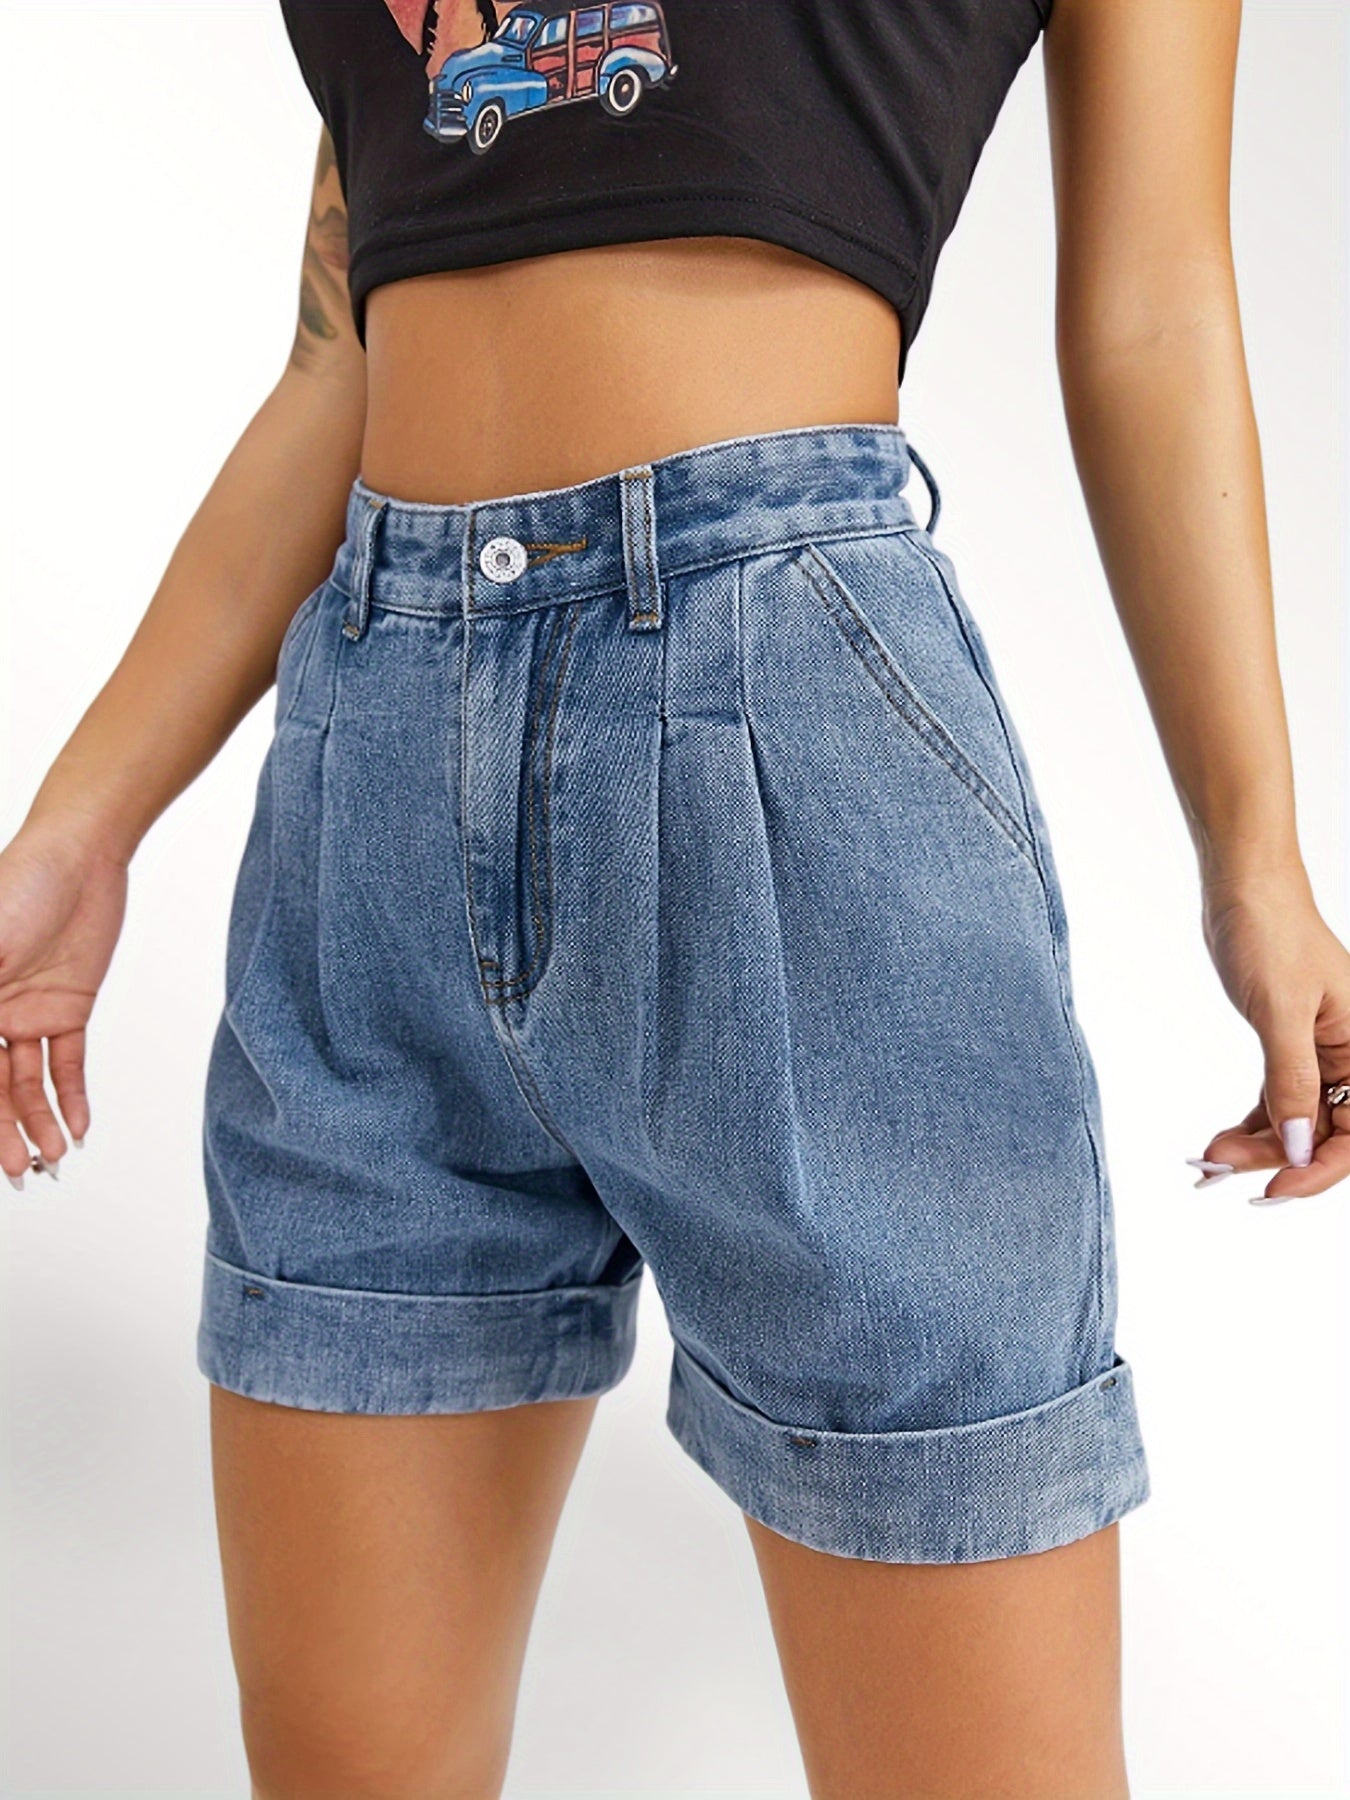 「lovevop」Blue Rolled Hem Short Denim Jeans, A-Lined High Waist Slash Pockets Loose Fit High Rise Short Denim Pants, Women's Denim Jeans & Clothing